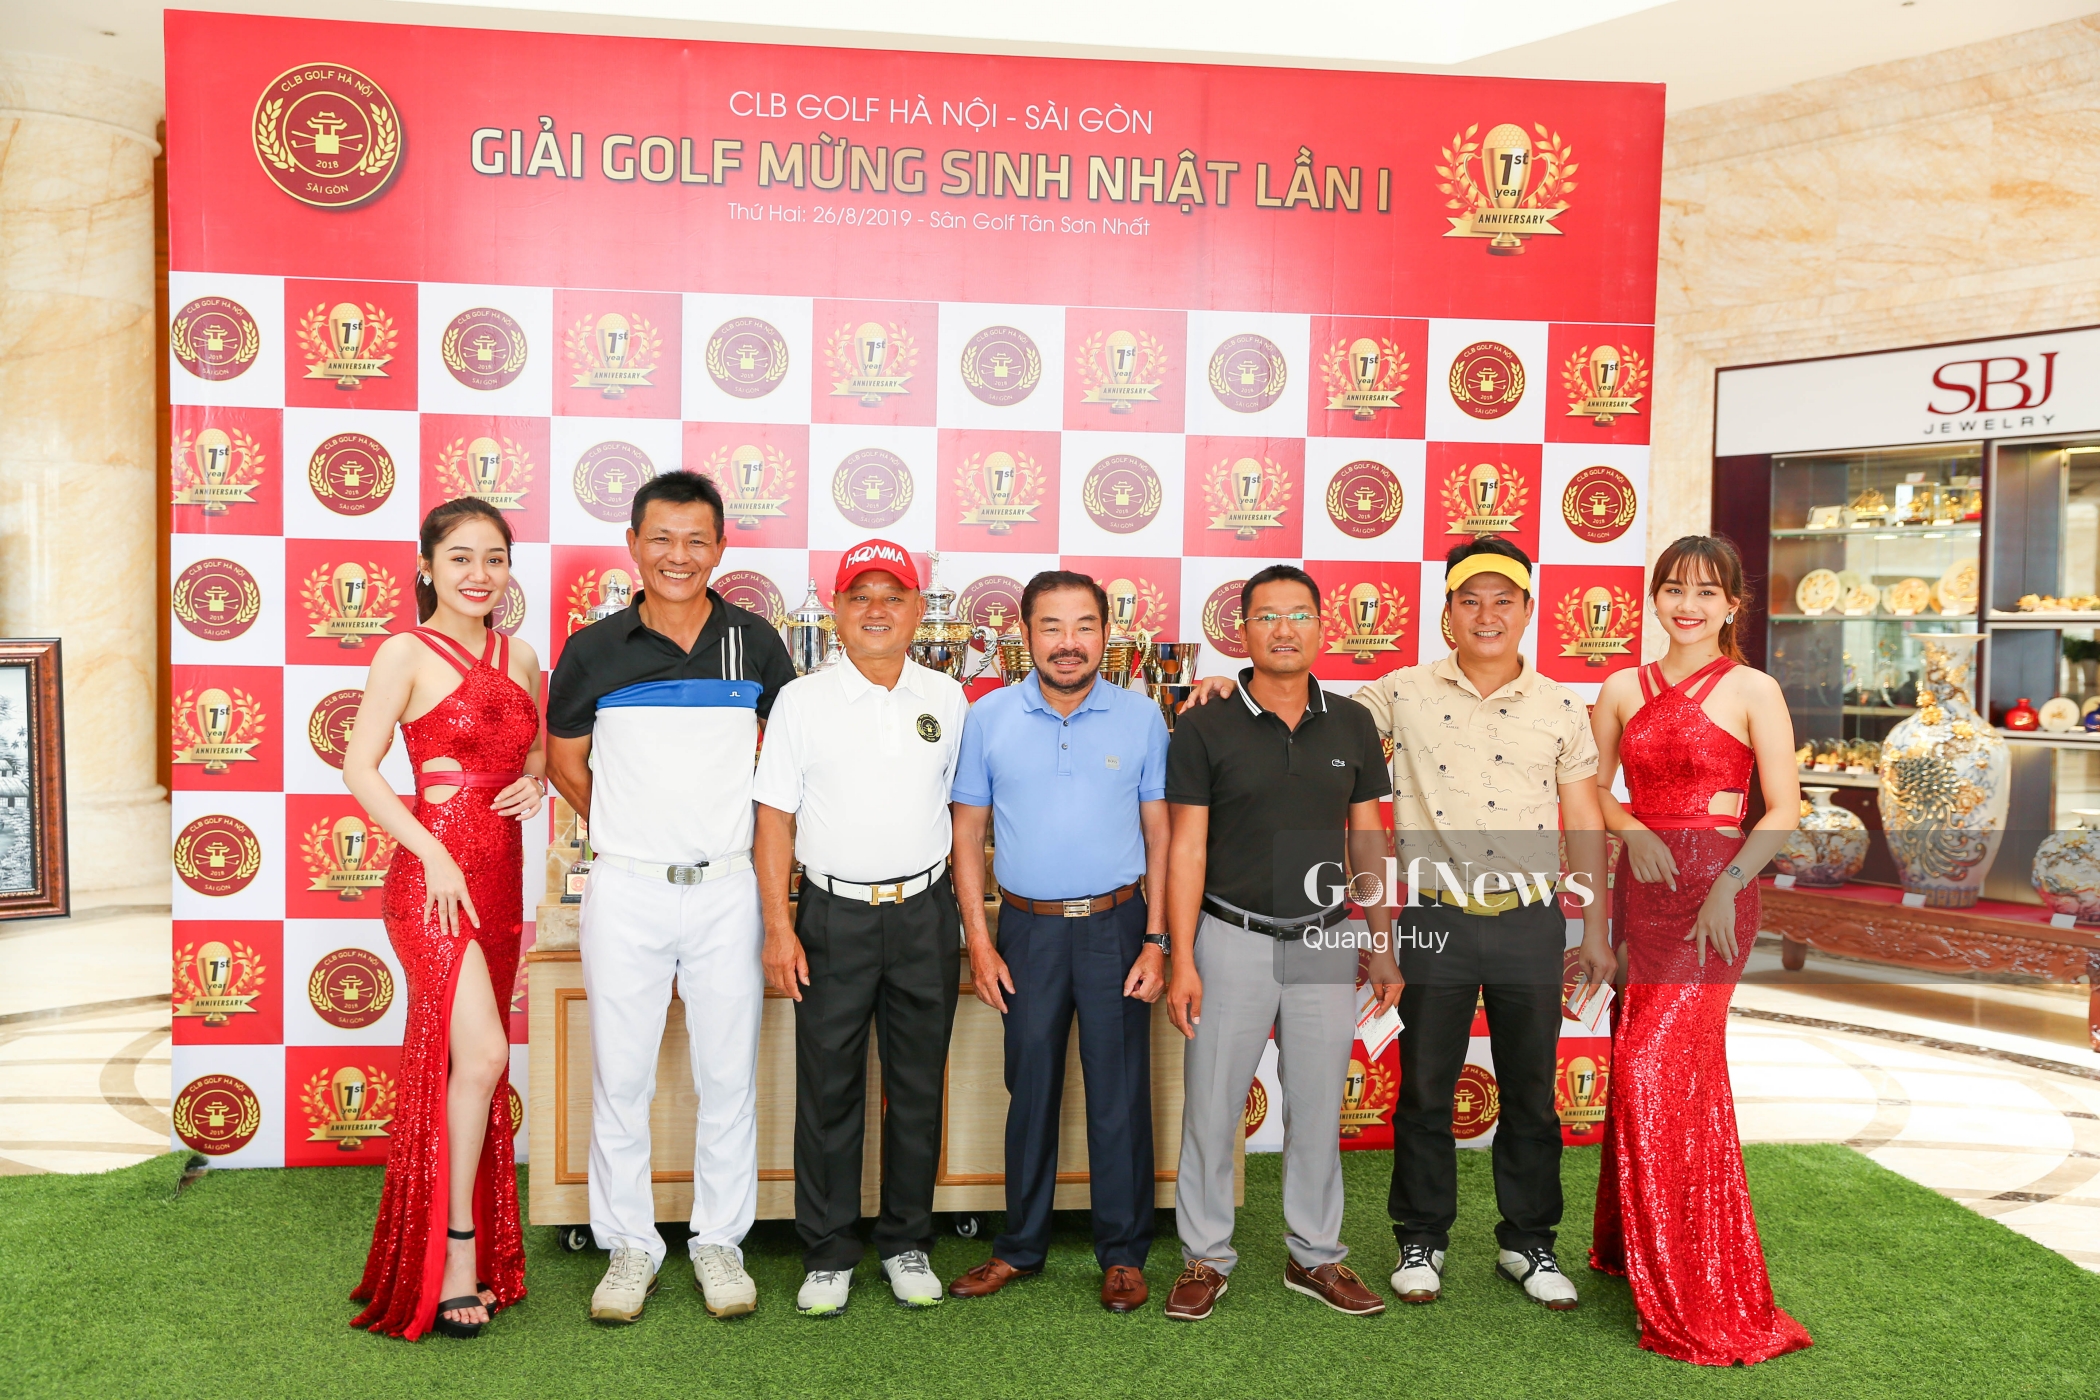 Giải golf mừng sinh nhật lần 1 CLB Hà Nội - Sài Gòn: Ôn lại một chặng đường